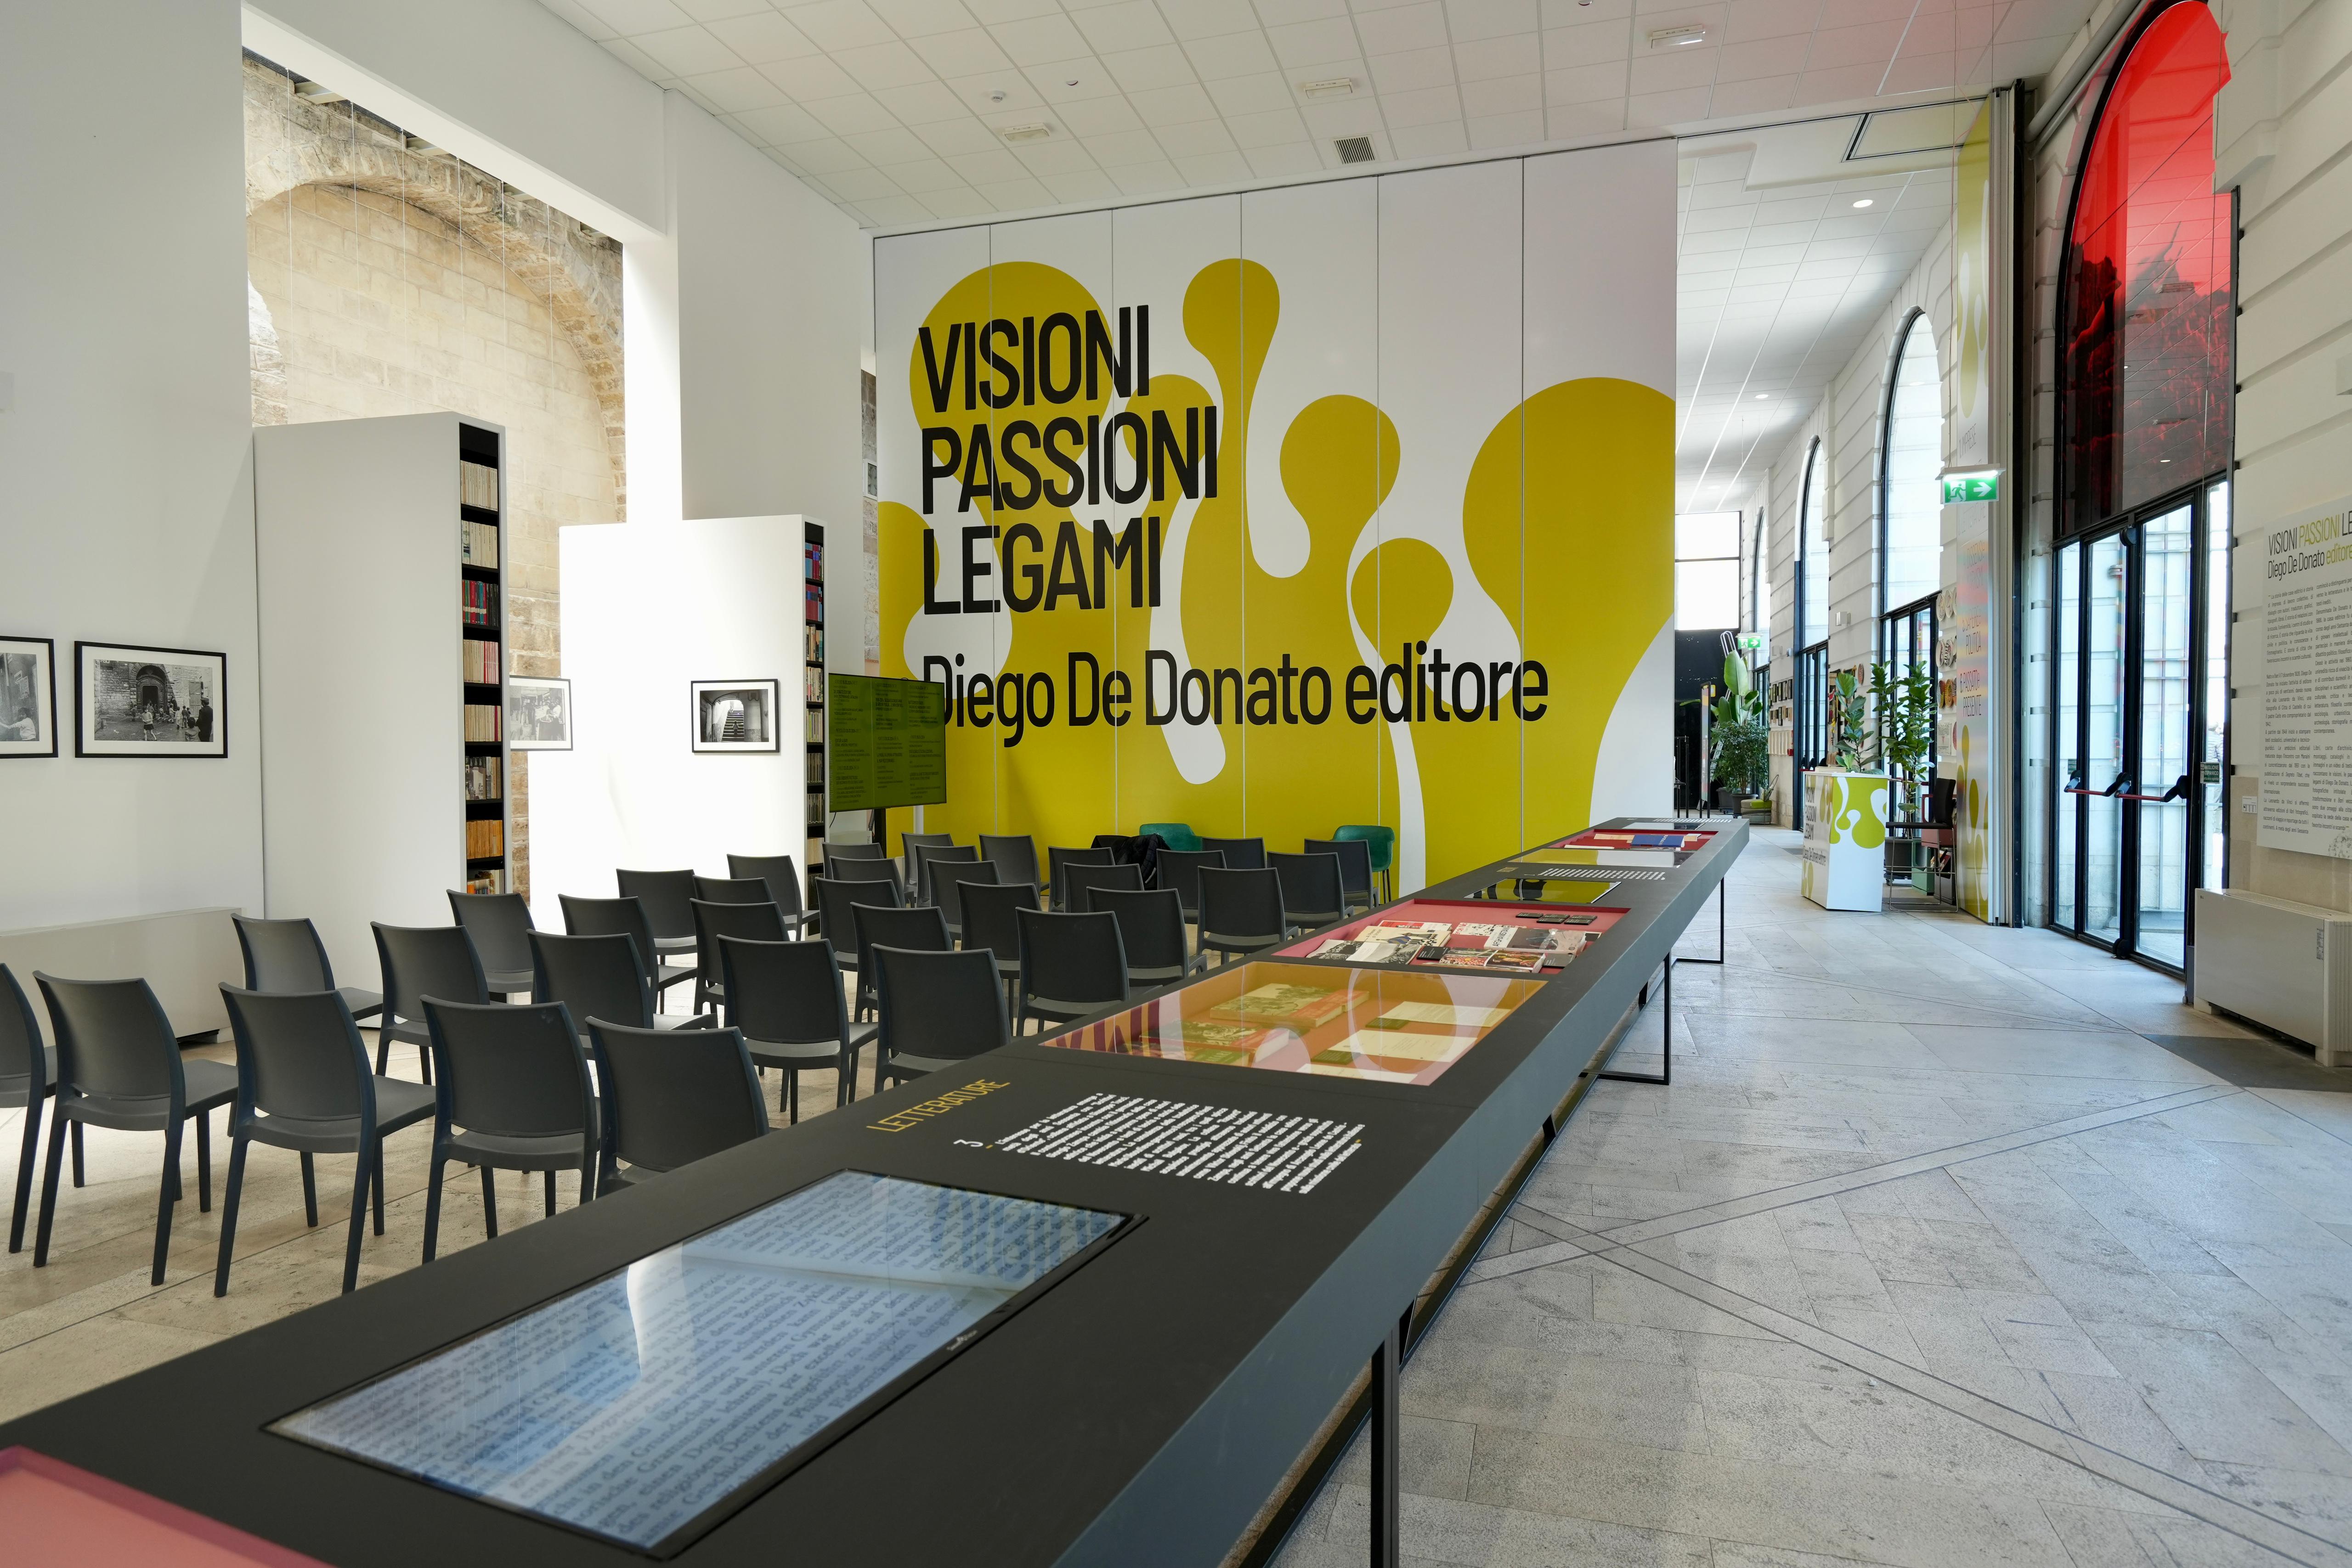 Galleria Il presidente Emiliano alla mostra “Visioni, passioni, legami. Diego De Donato editore” - Diapositiva 2 di 8